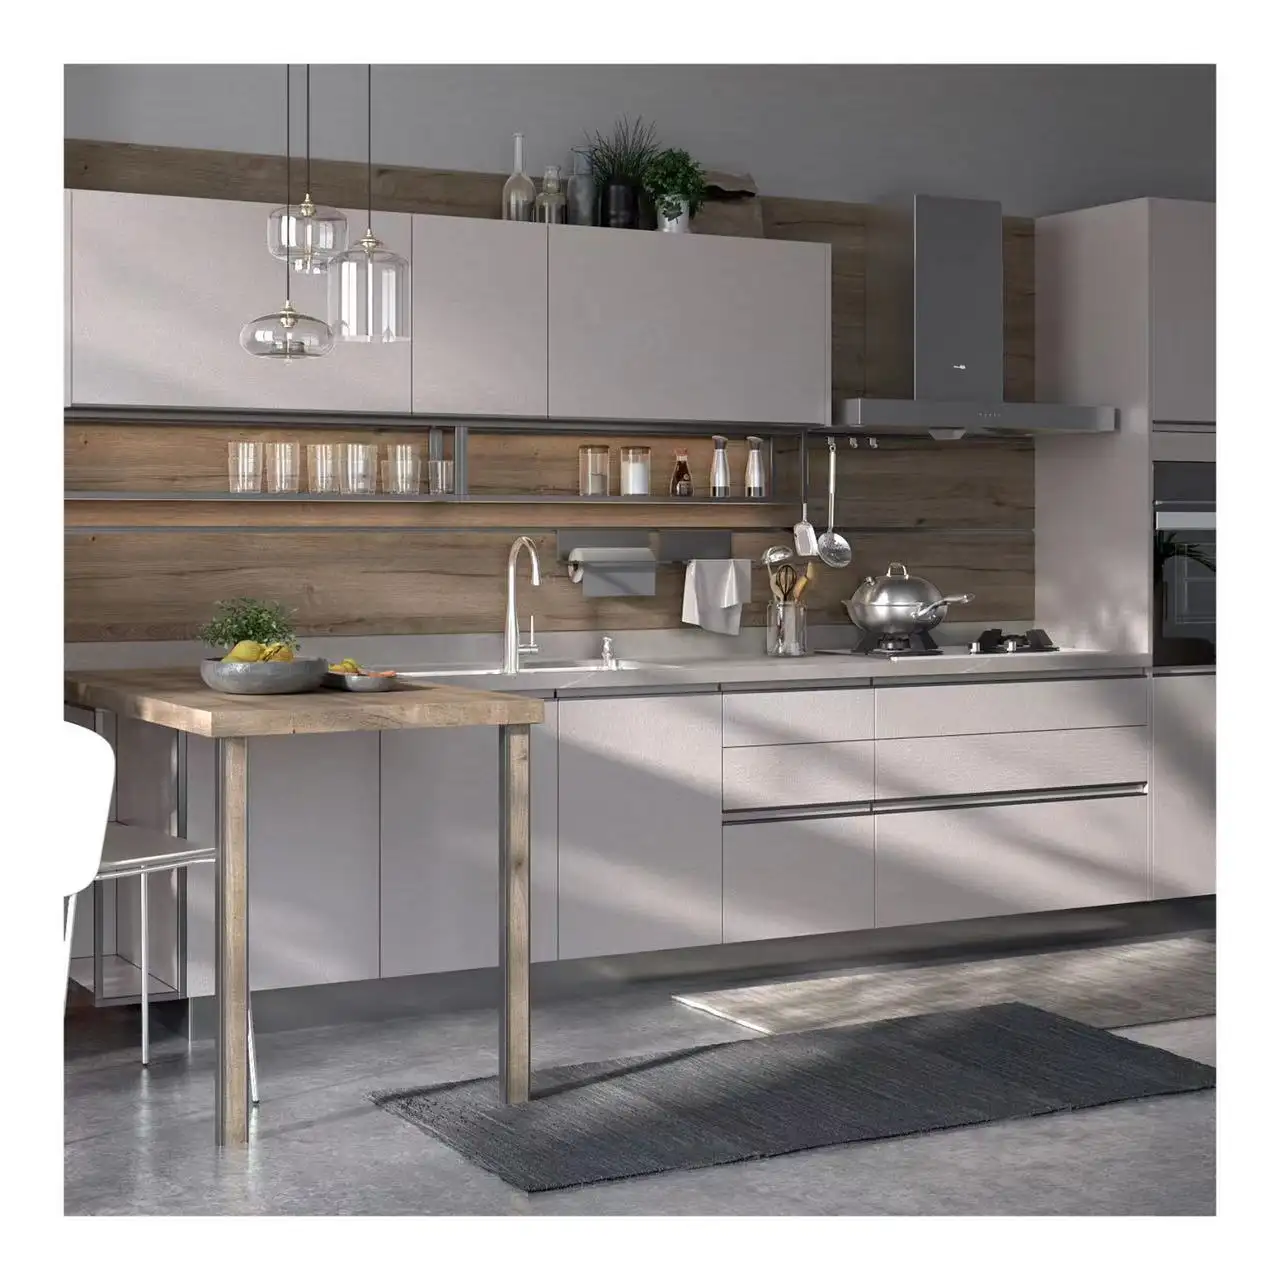 キッチンキャビネットキッチン家具のためのプロの良い価格完全な白い色のキッチンデザインモダンな食器棚